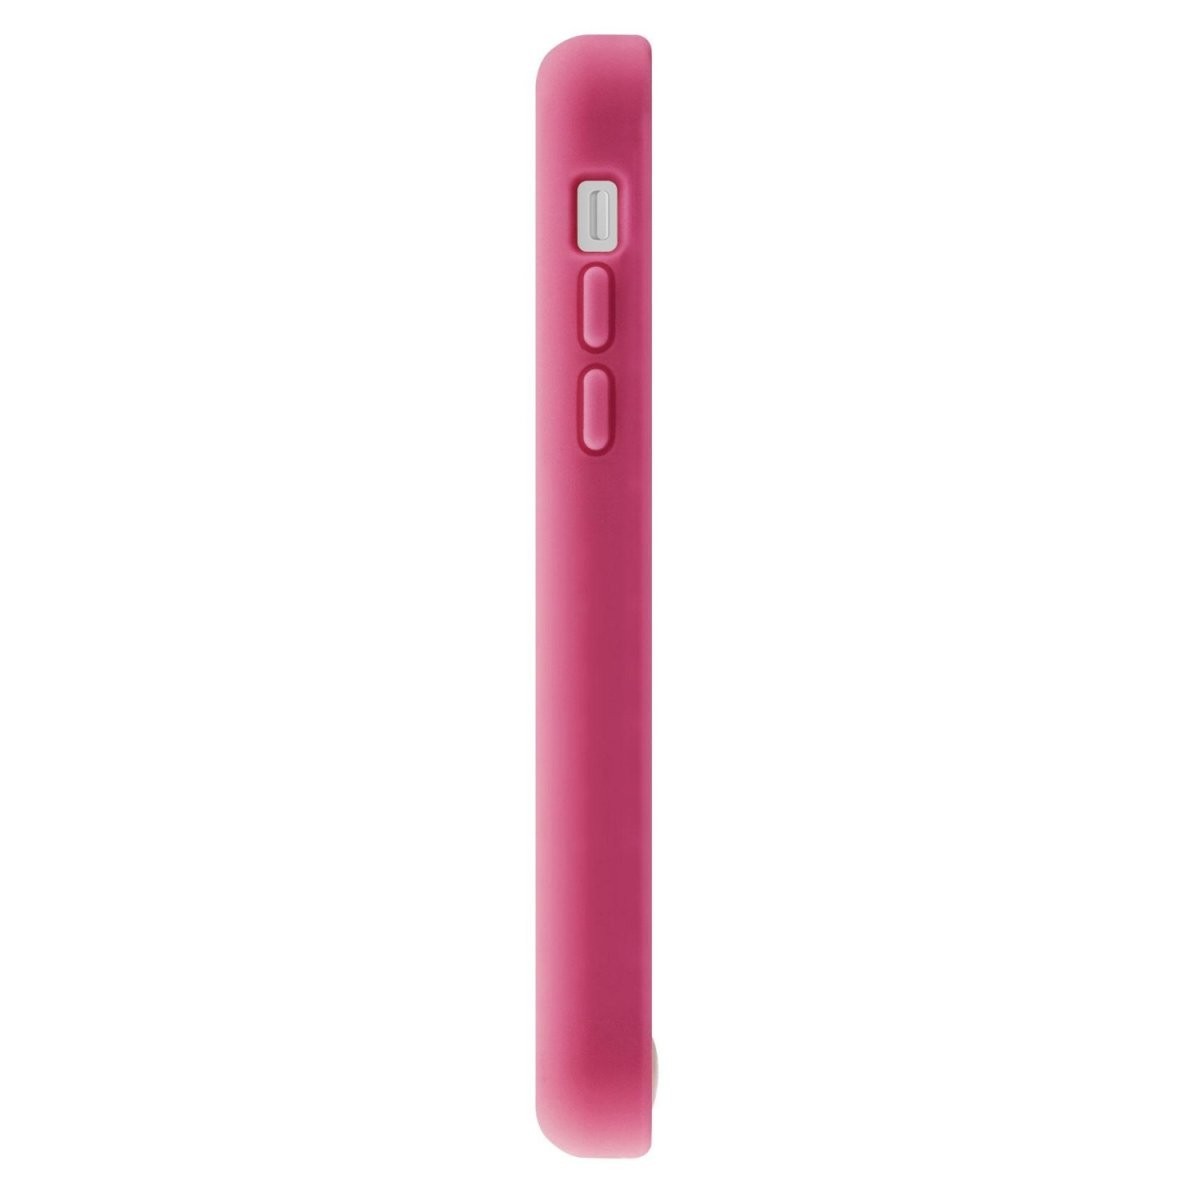 スマホケース カバー iPhone5c SwitchEasy ピンク レッド 赤 ジャケット シリコン イヤホンジャック 保護フィルム クロス_画像5